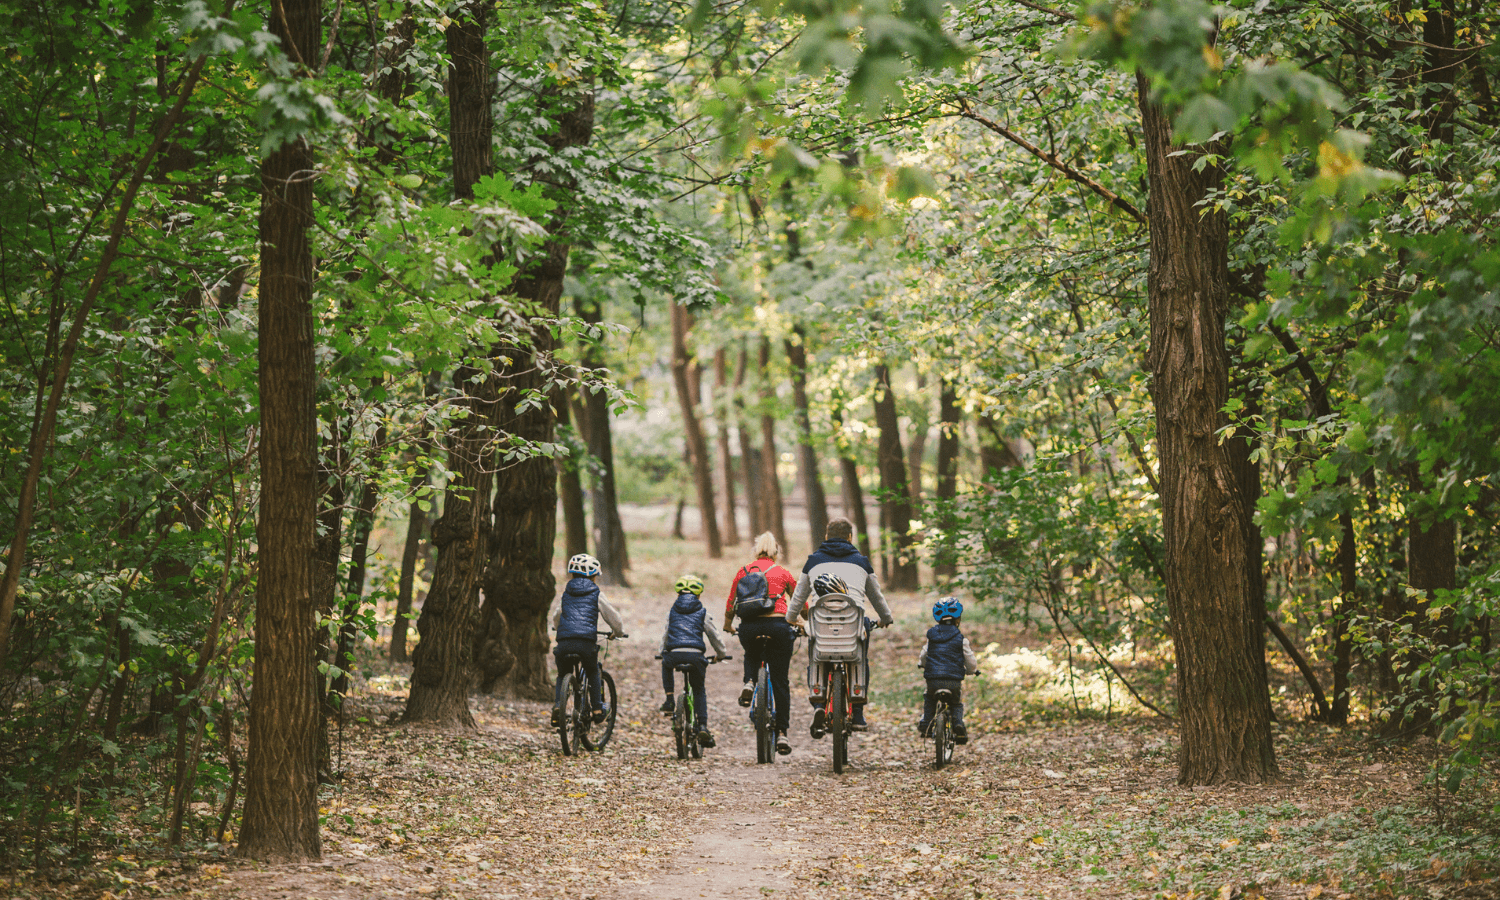 Neue Hobbies für Kinder gesucht? Wie wäre es mit radfahren oder mountainbiken im Wald? © iStock.com